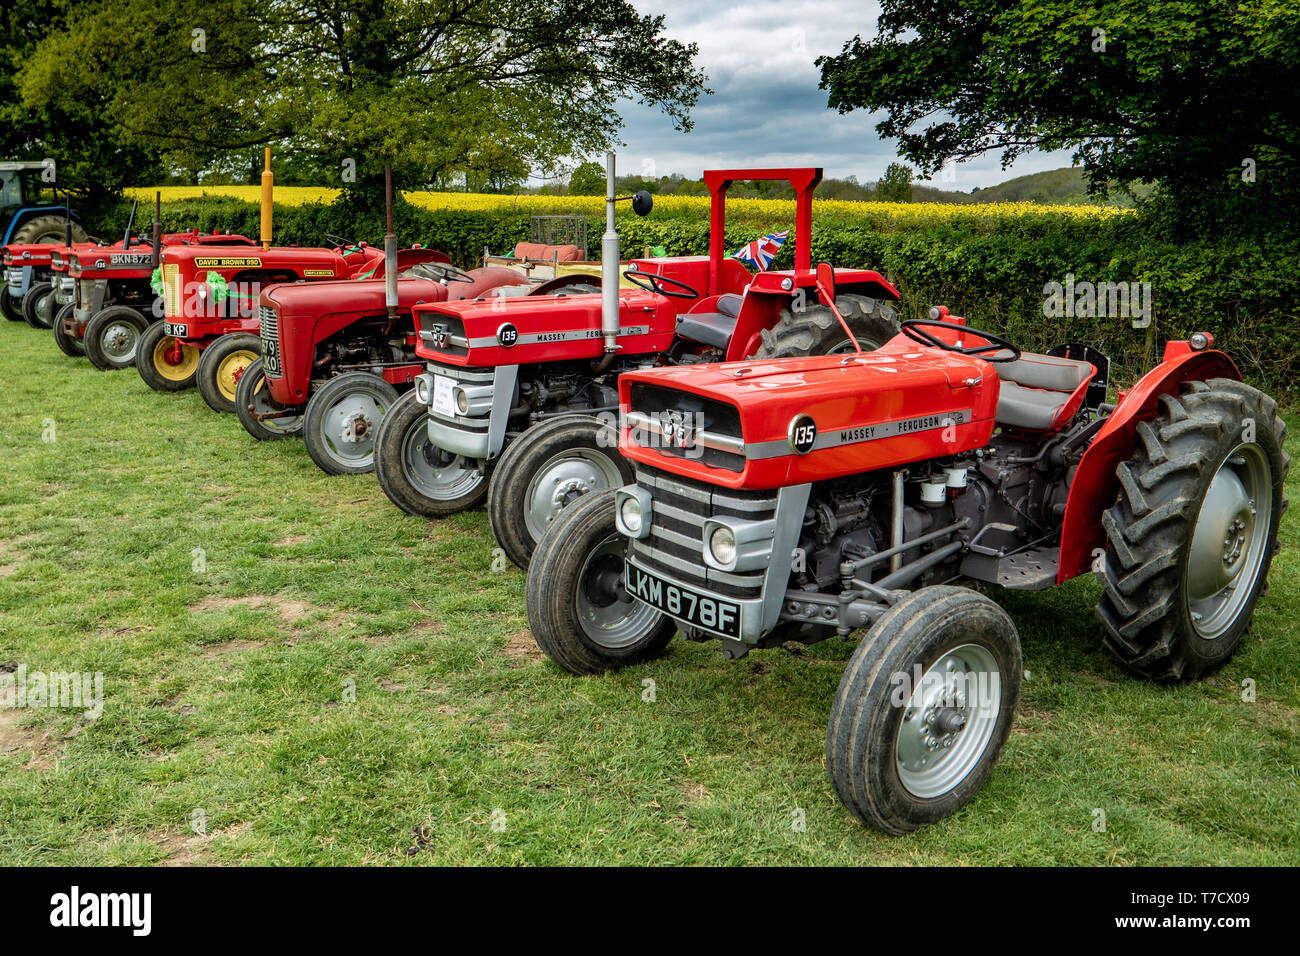 Featured image of post Mf Oldtimer Traktoren Die fachzeitschrift oldtimer traktor berichtet monatlich ber historische schlepper stamos unimog co